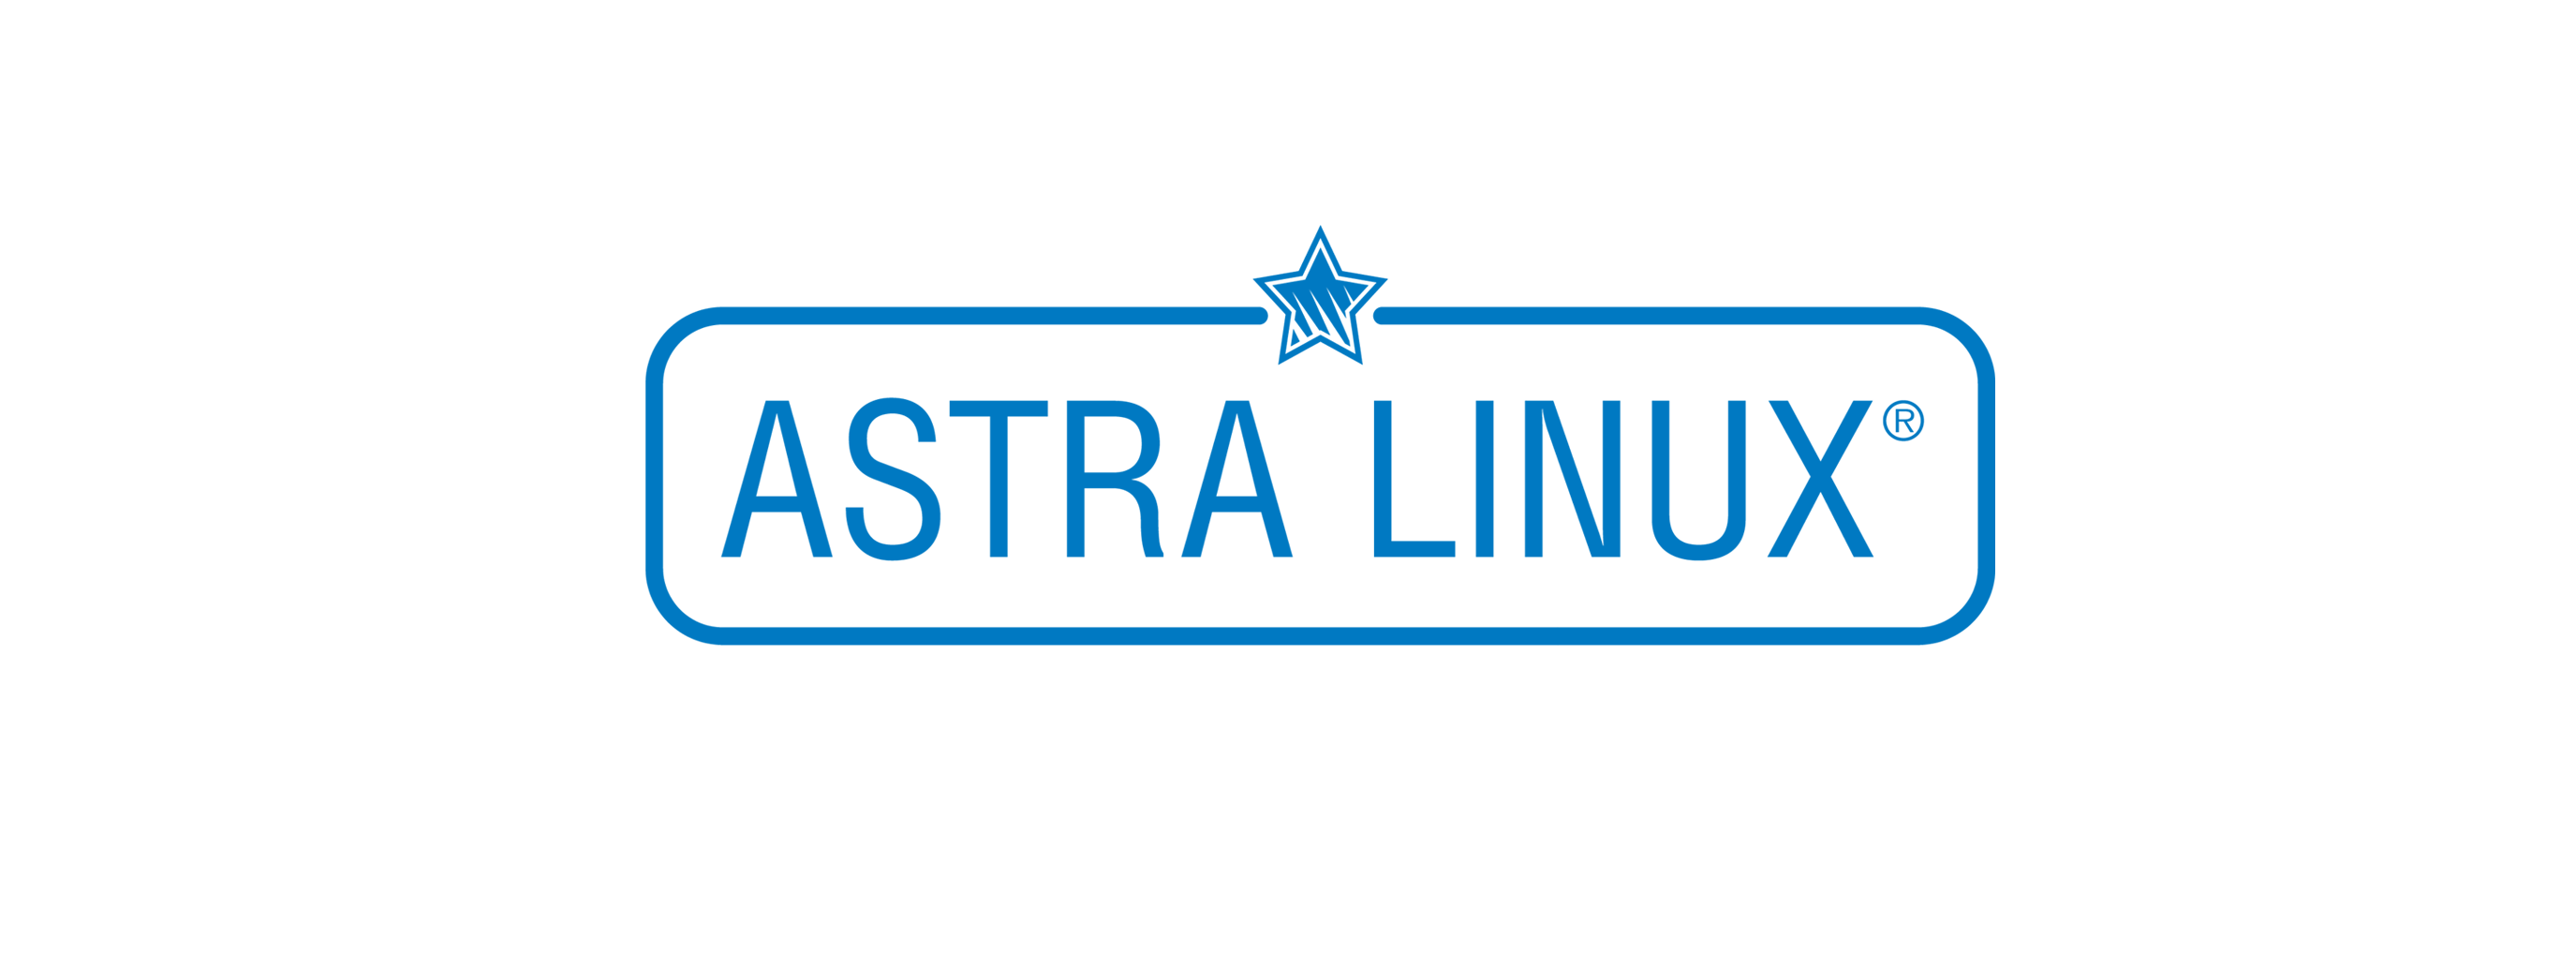 Лицензия РусБИТех Astra Linux Special Edition (очередное обновление 1.7), уровень защищенности Максимальный (Смоленск), РУСБ.10015-01 (ФСТЭК), Russian, на 12 месяцев базовая лицензия для сервера до 2 сокетов и неограниченного количества виртуальных машин  OS2101X8617DSKSUVSR02-SO12 Astra Linux Special Edition (очередное обновление 1.7), уровень защищенности Максимальный (Смоленск) - фото 1